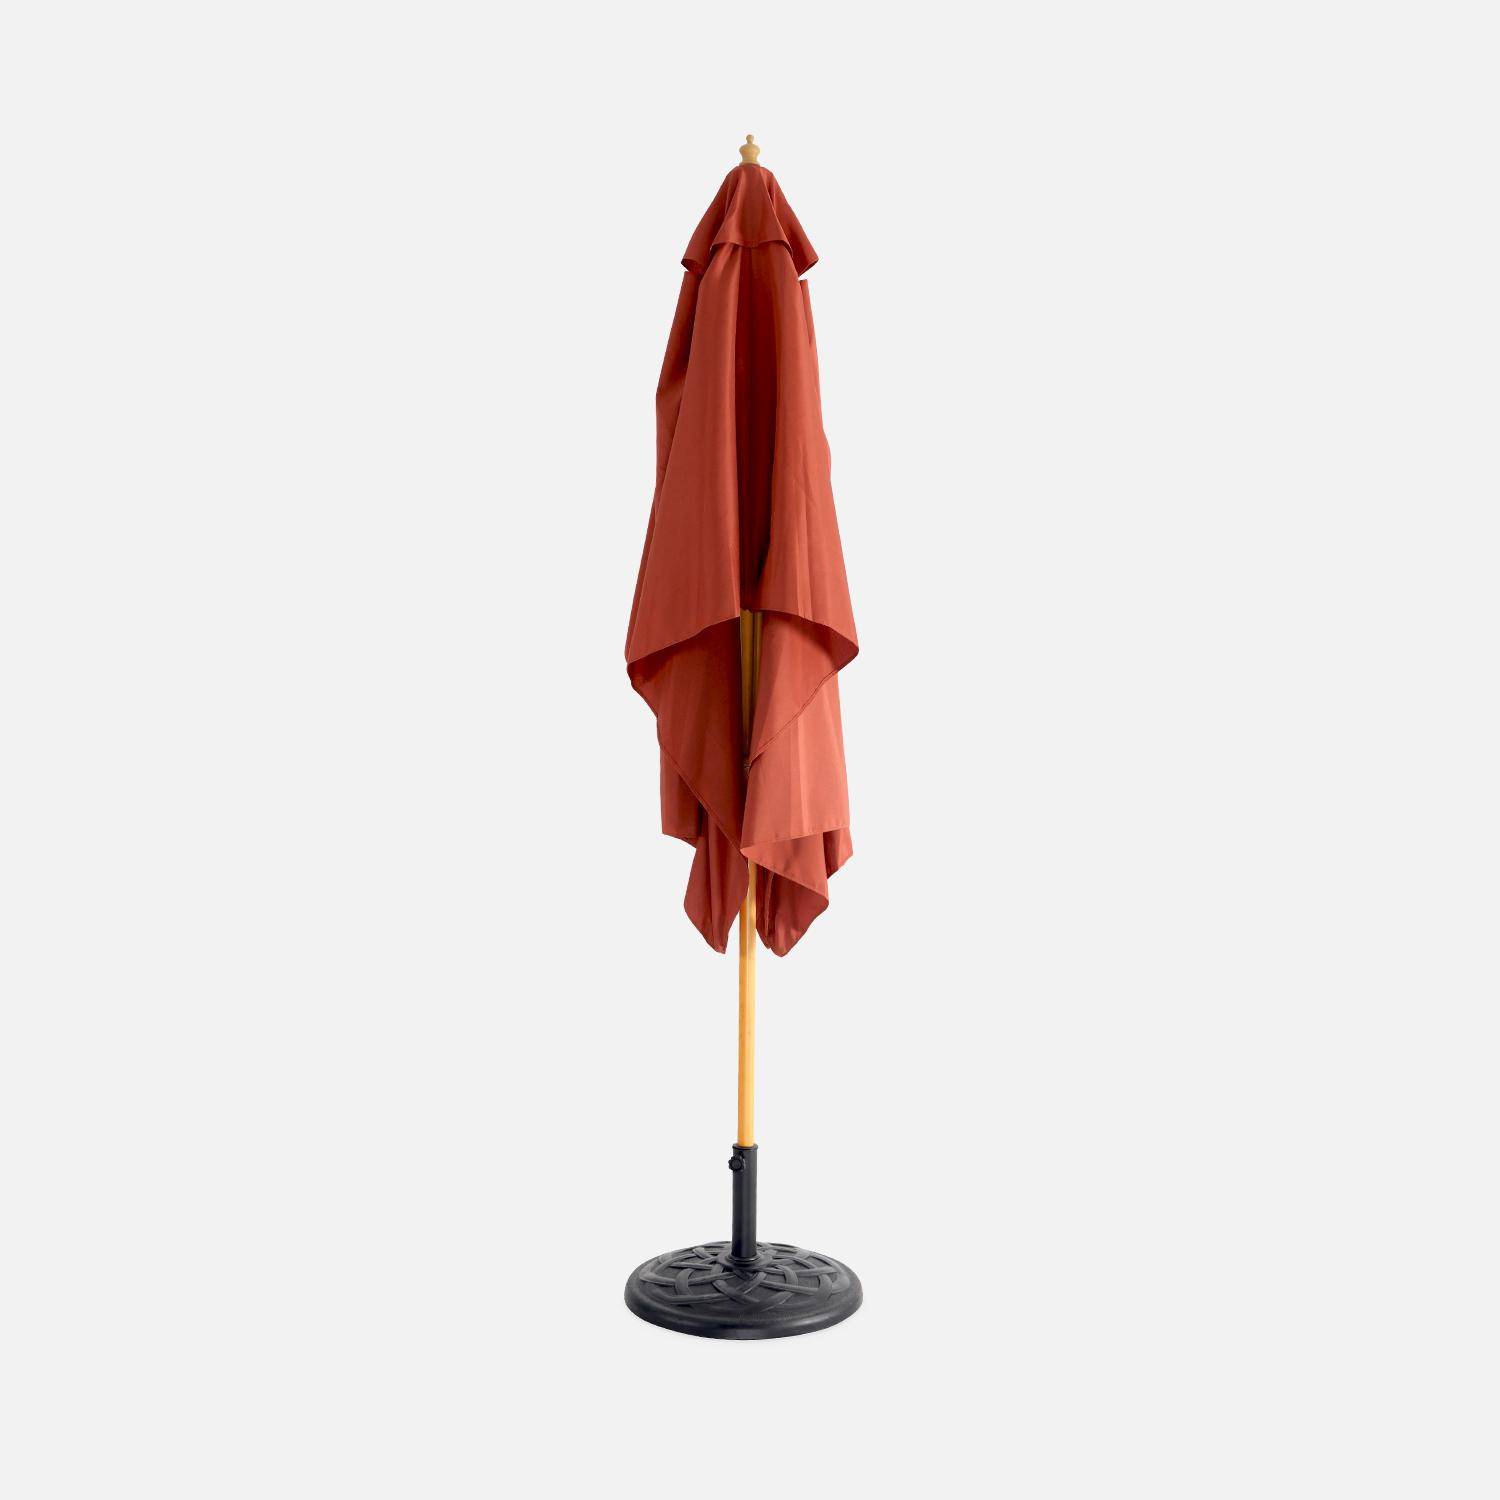 Parasol droit rectangulaire en bois 2x3m - Cabourg Terracotta - mât central en bois, système d'ouverture manuelle, poulie Photo3